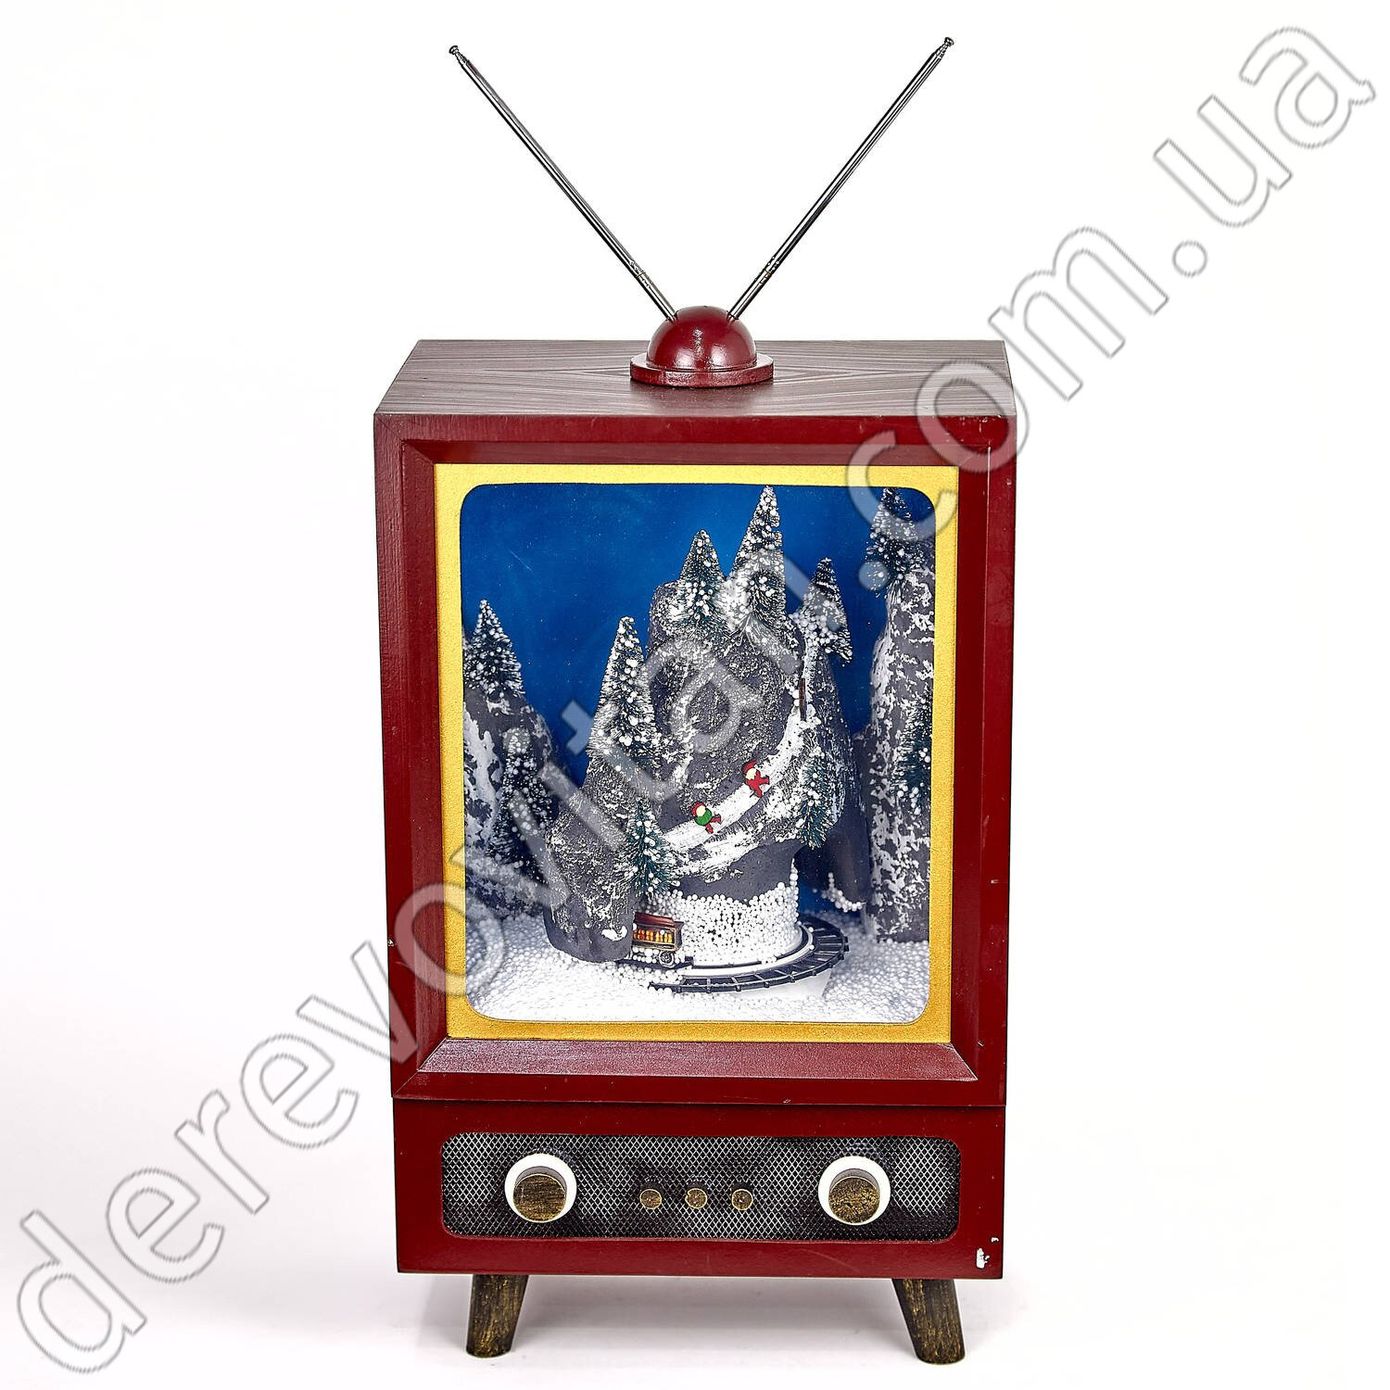 Новогодний музыкальный декор "Телевизор" с падающим снегом, 43×26 см